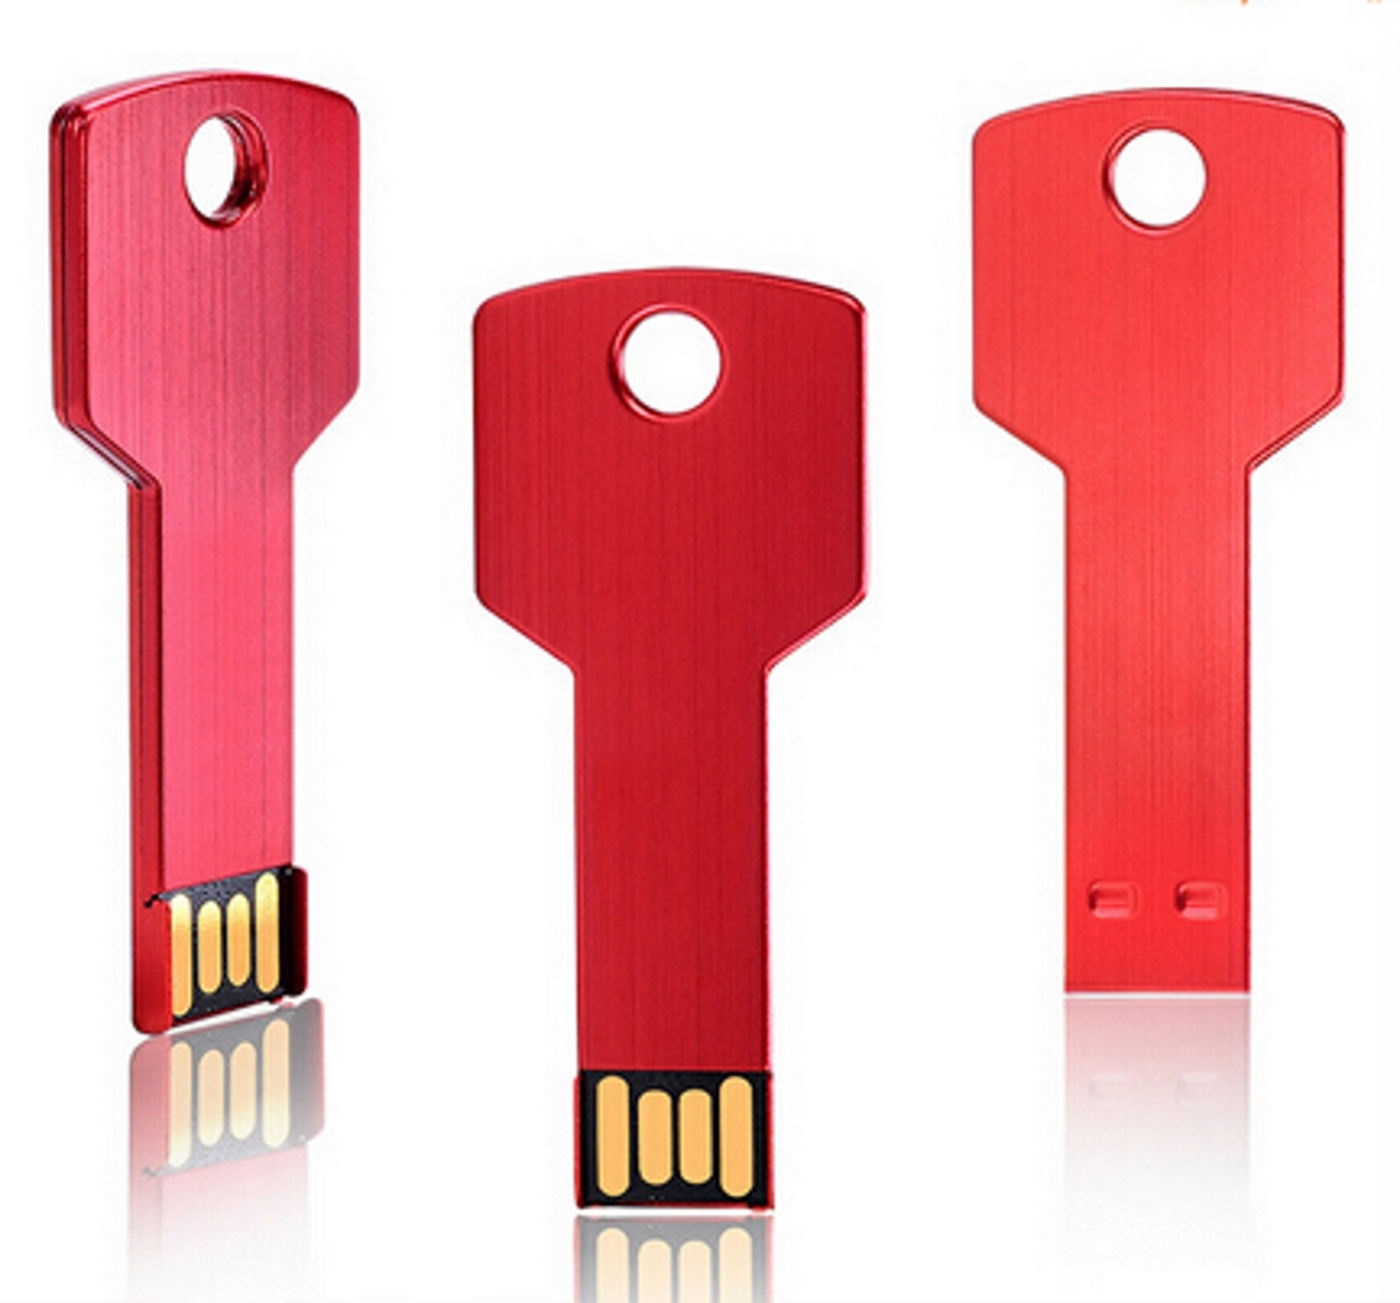 USB GERMANY Key (Rot, USB-Stick GB) Rot 16 16GB